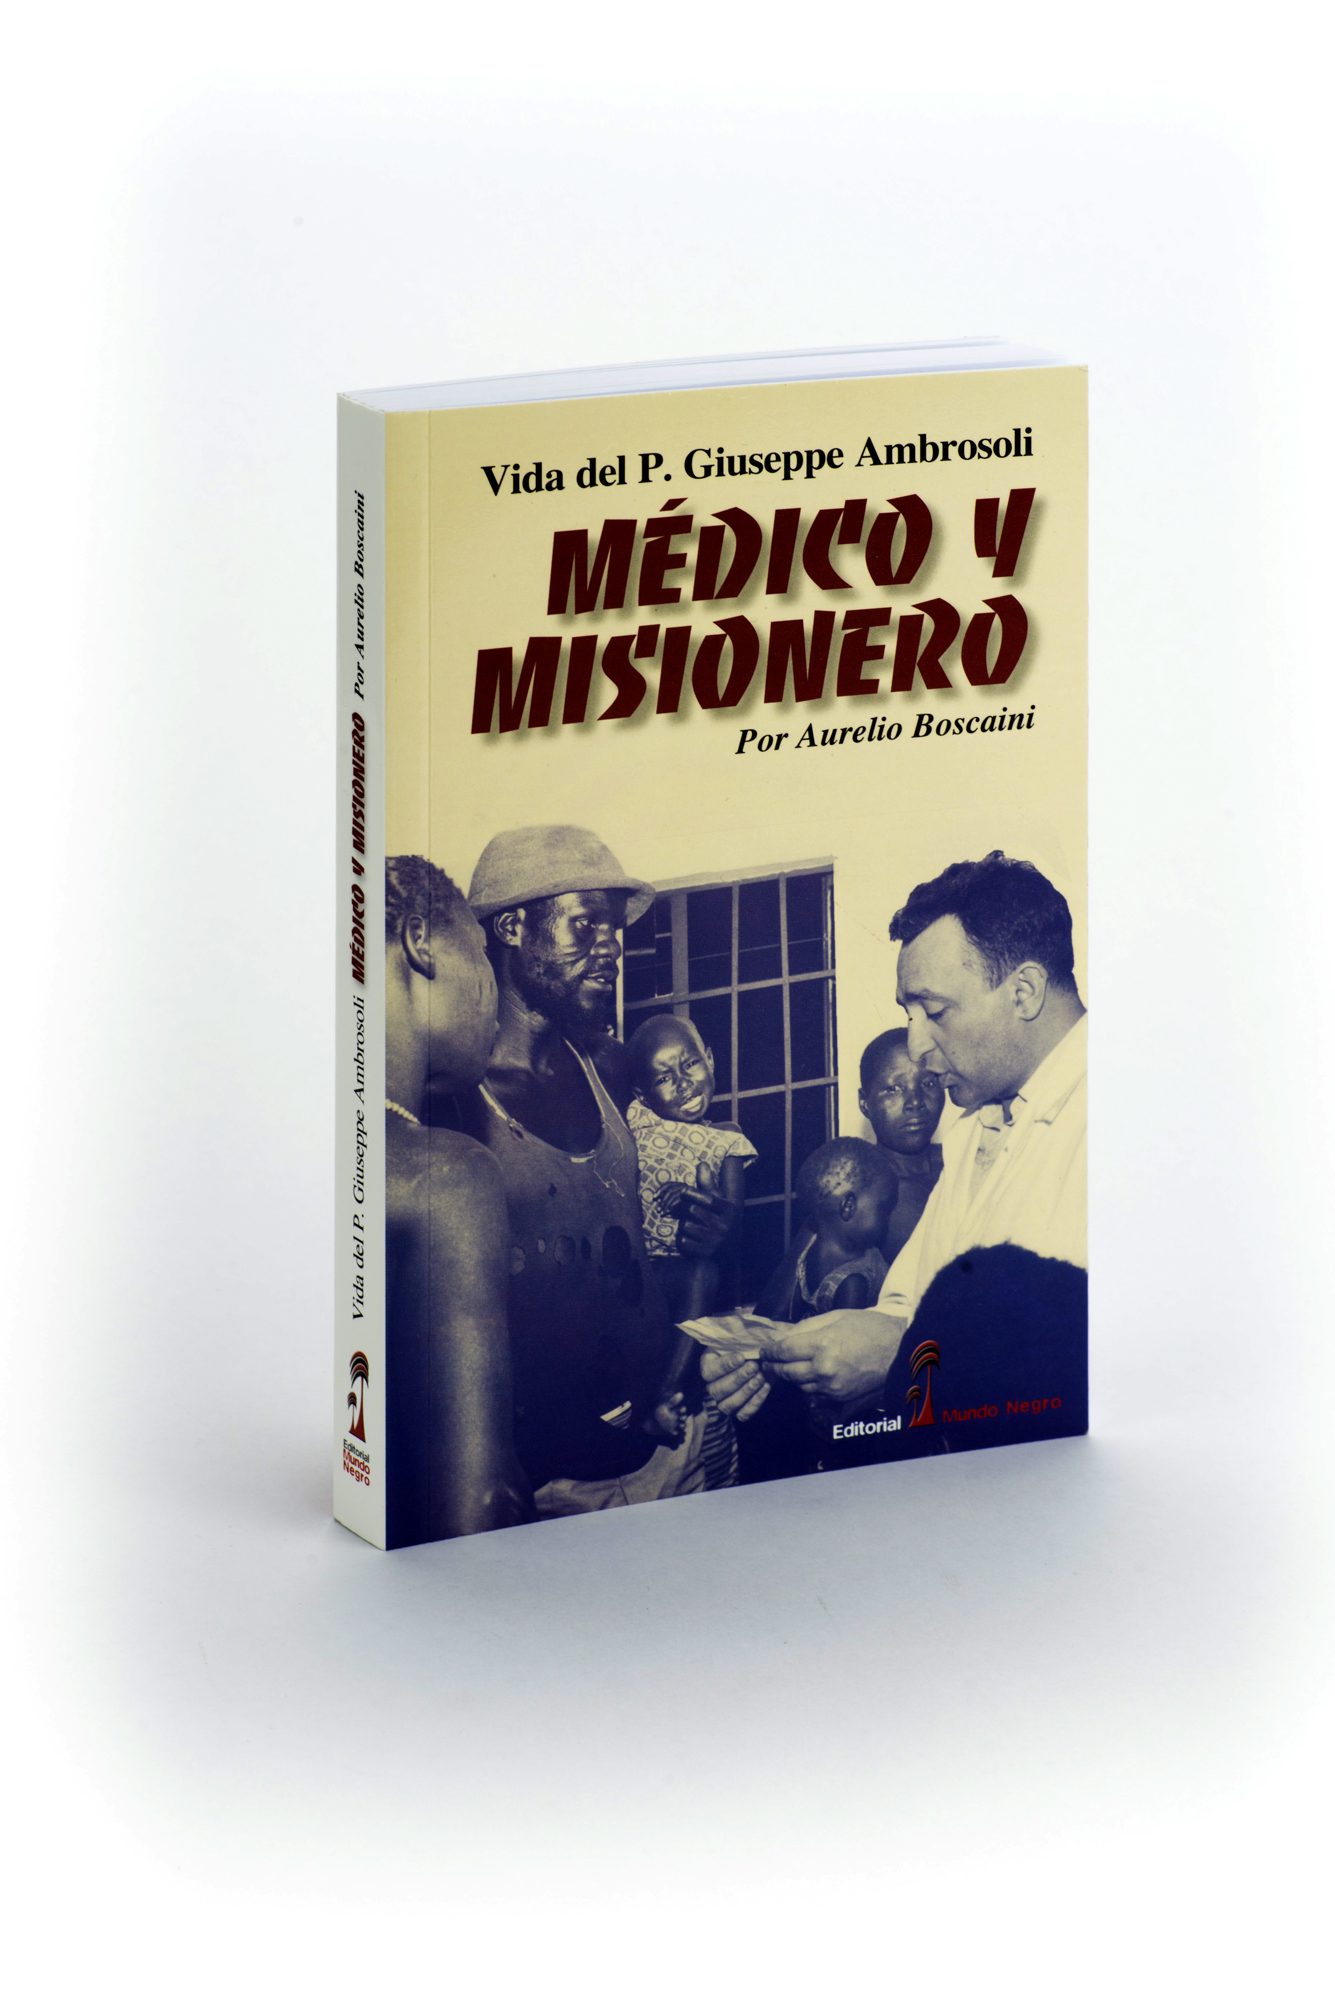 giuseppe_ambrosoli_medico-y-misionero_cubierta_libro.jpg